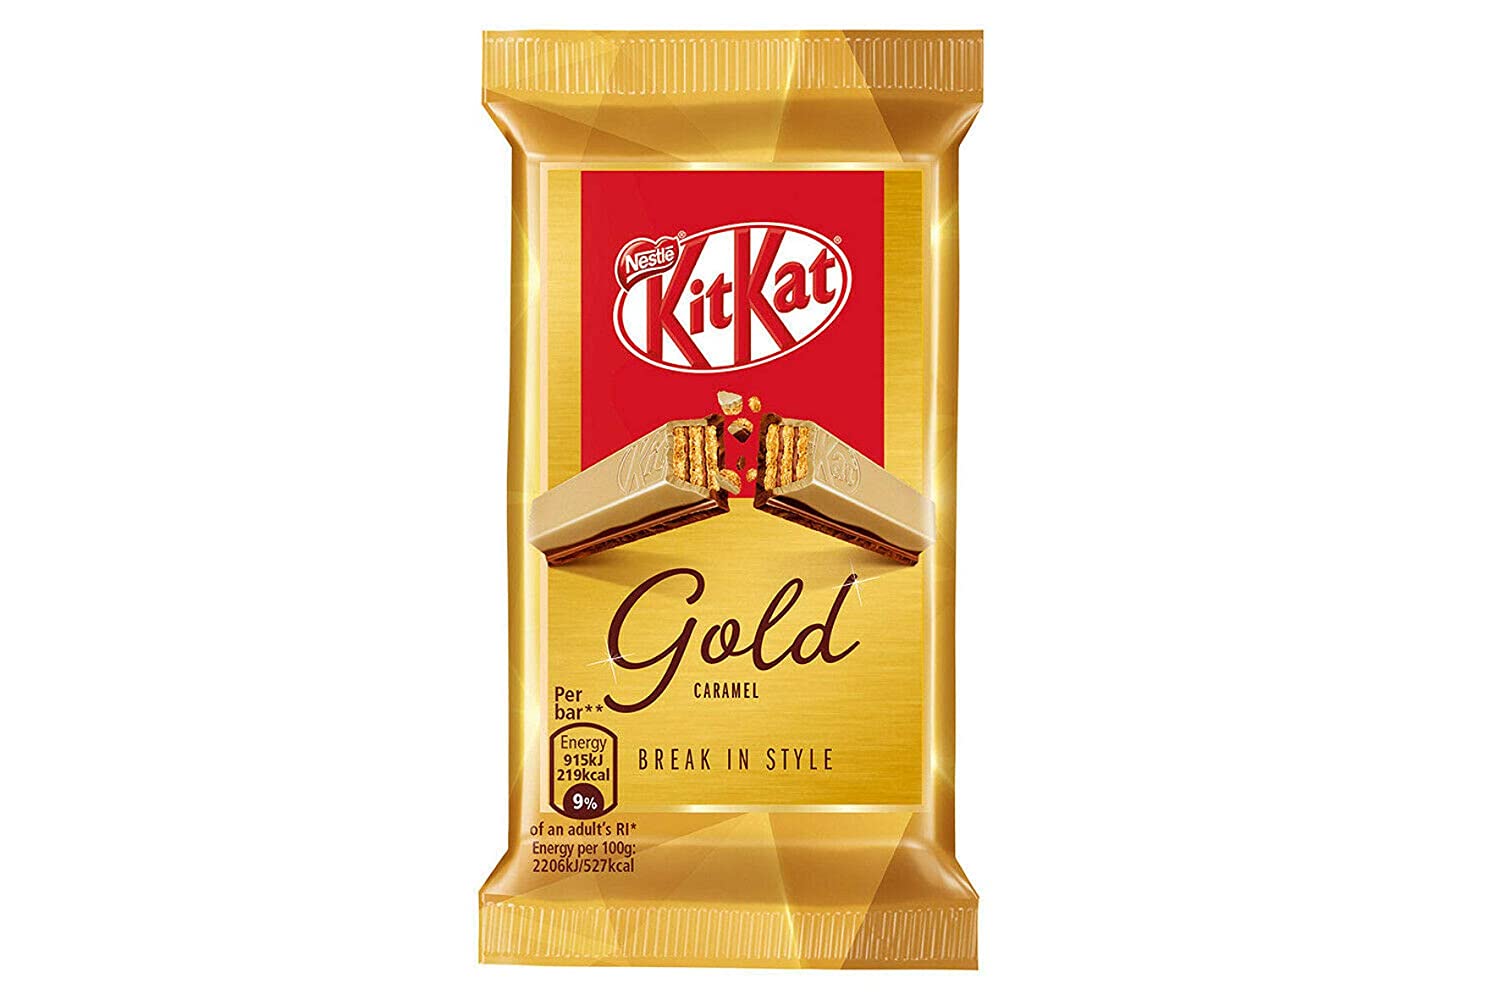 Kit Kat gold snack americani.com